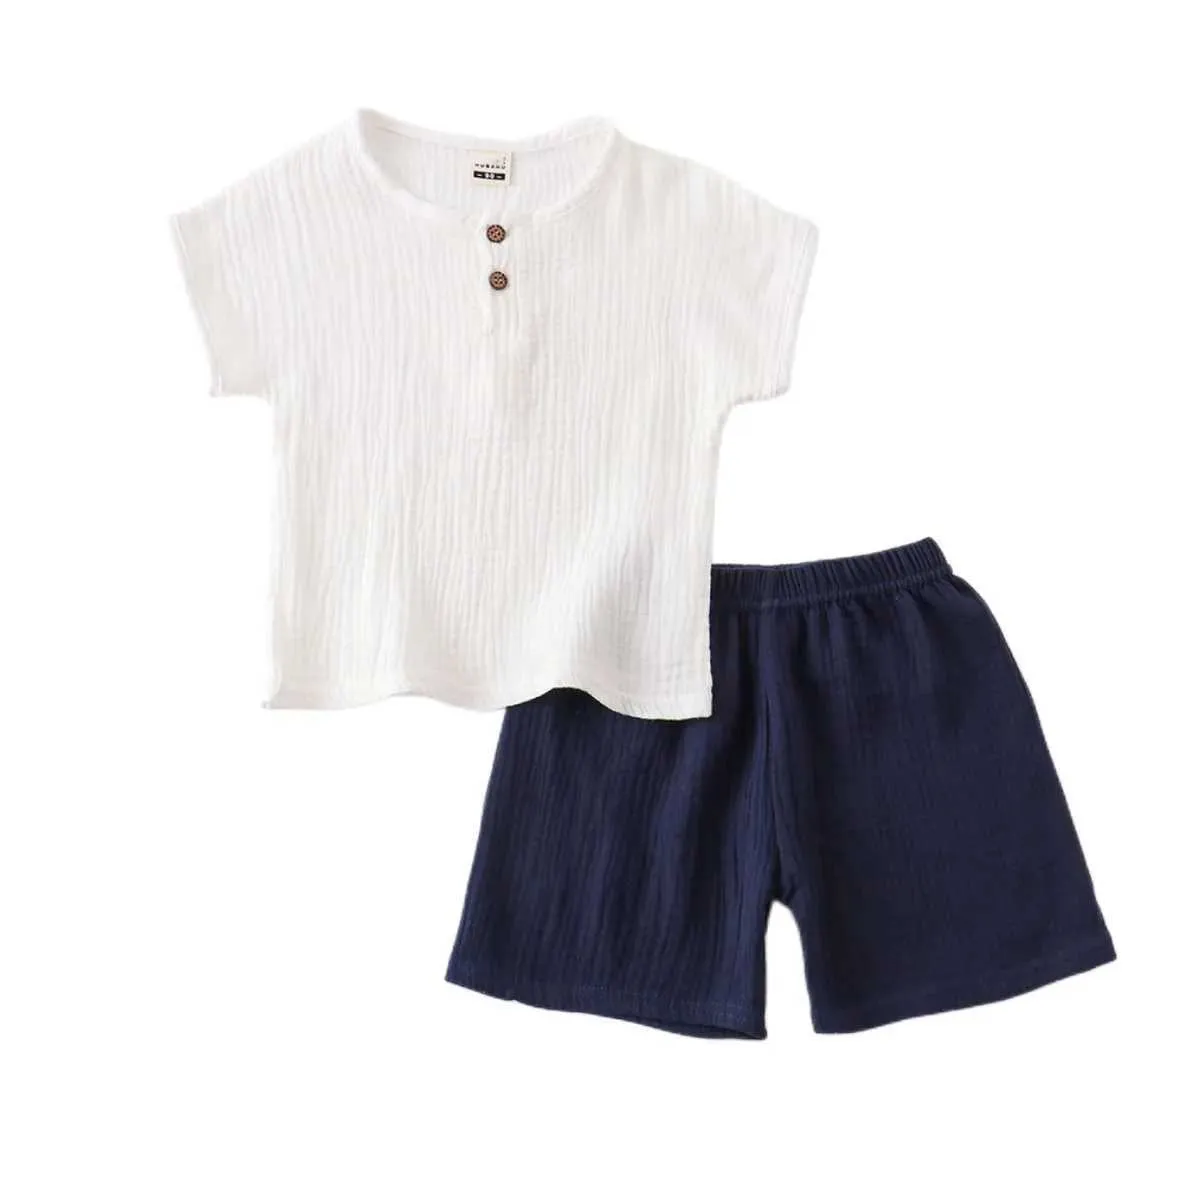 Одежда Suts Summer Baby Set Set Linen Baby Clothing Suit Solute Tee и Shorts 2 PCS для мальчиков набор H240425